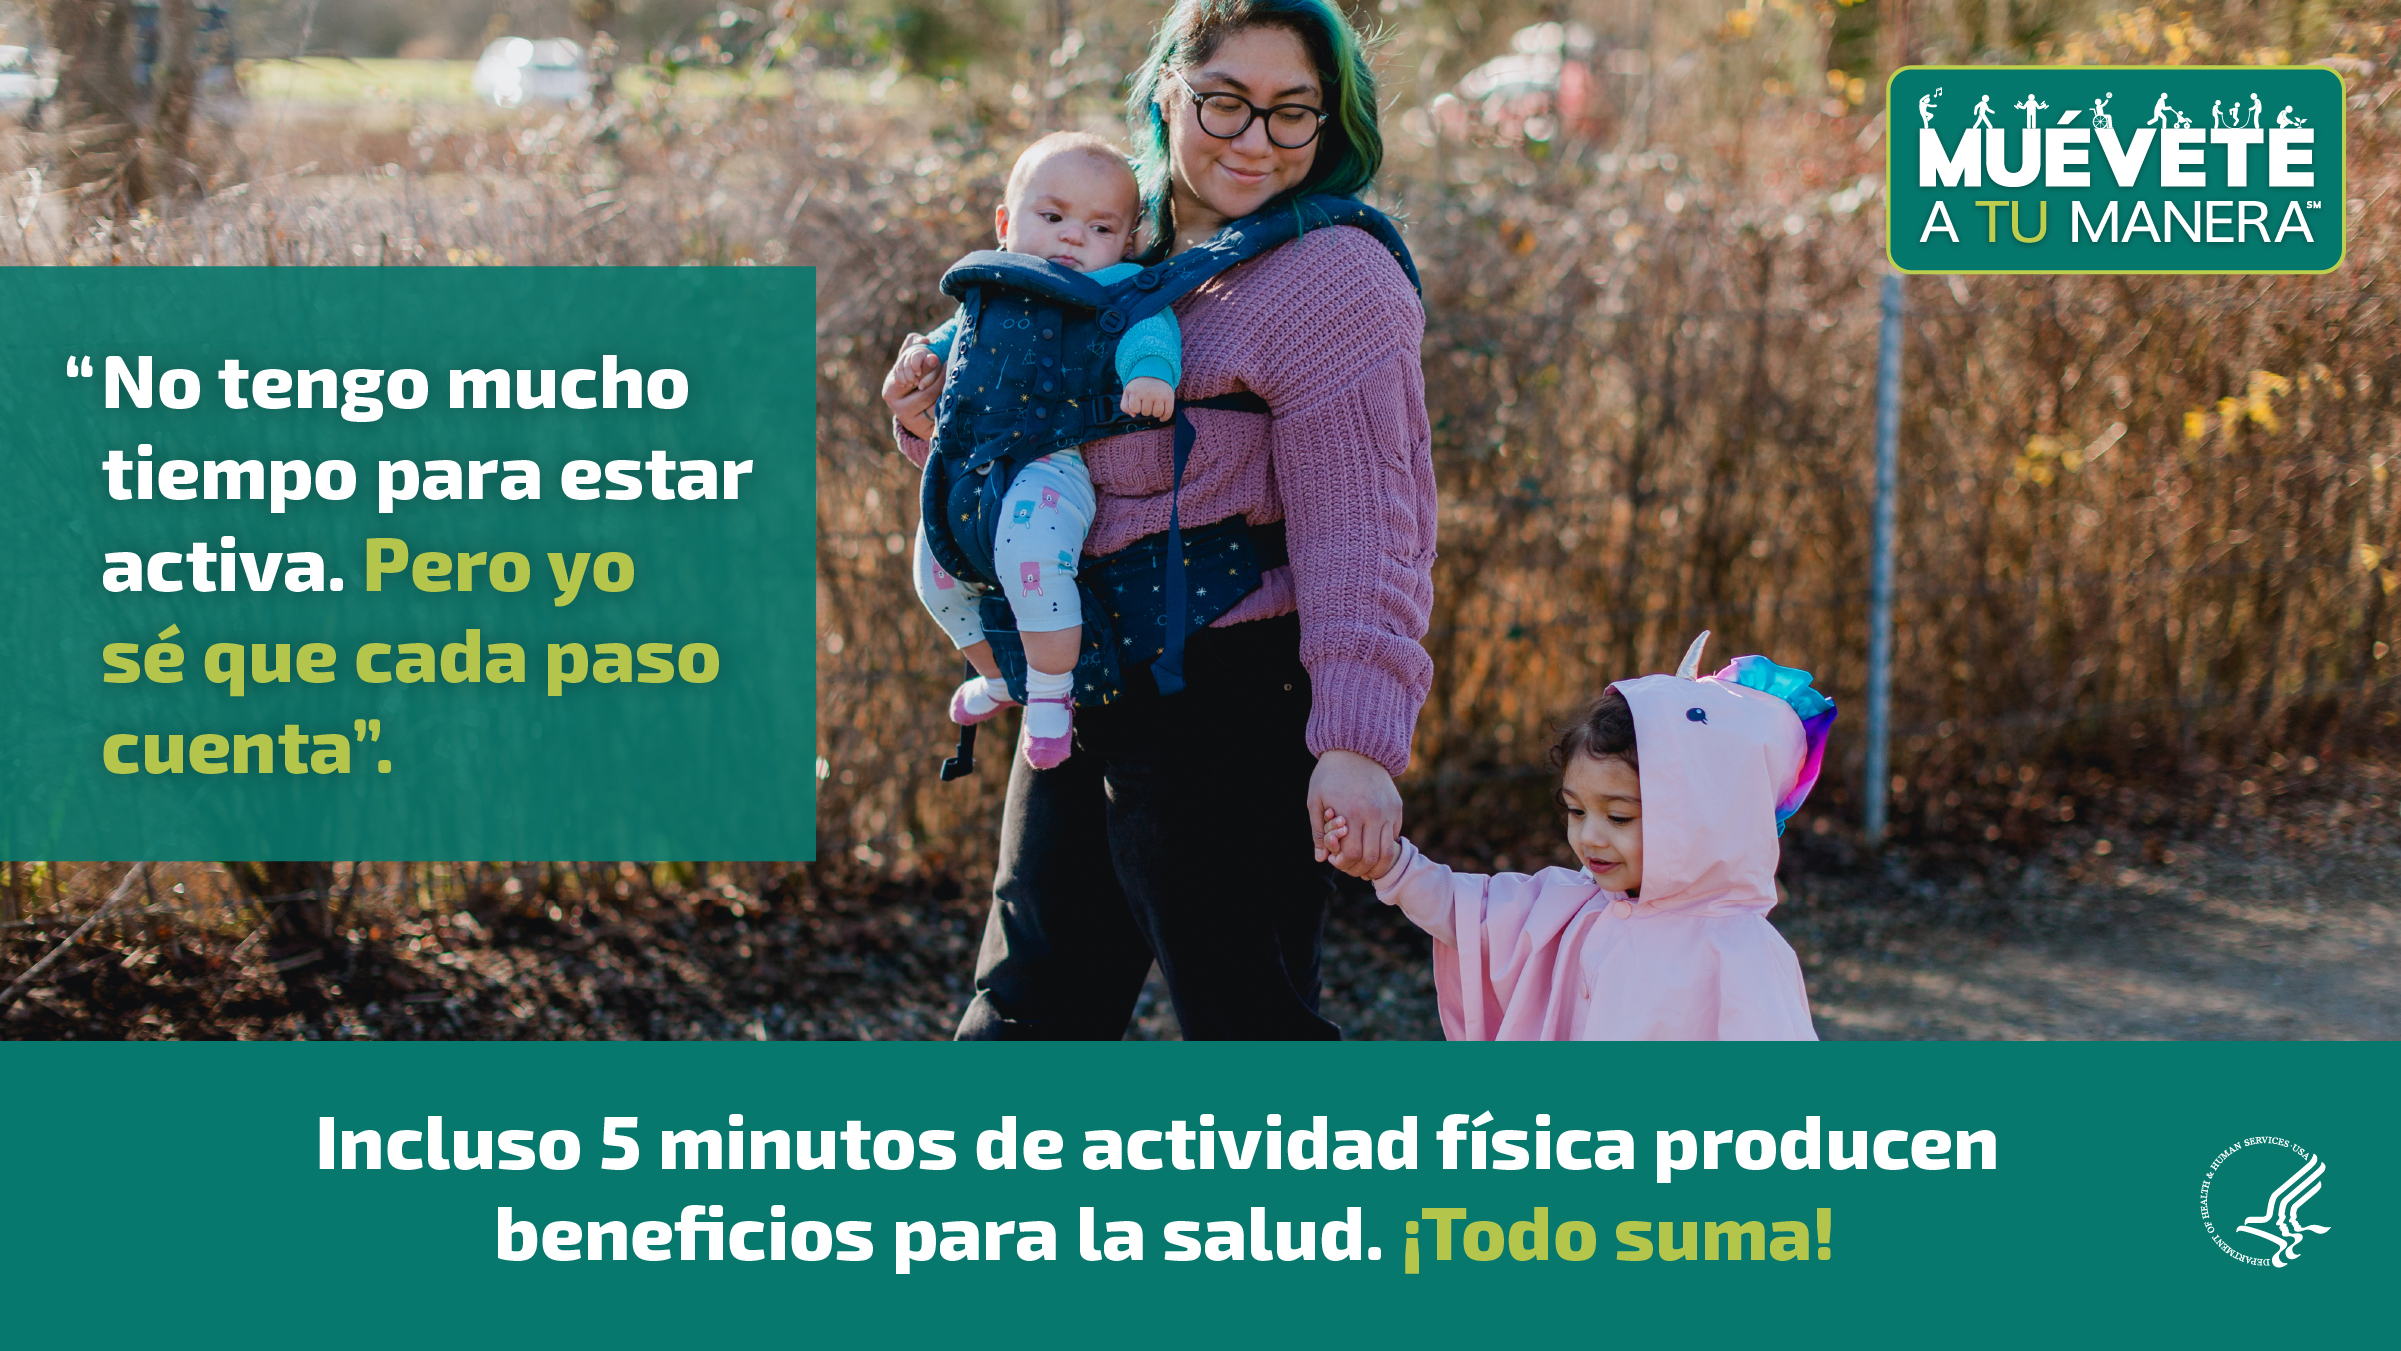 Una joven madre hispana está caminando en el parque con su hija pequeña  y su bebé. La imagen también muestra el logotipo de “Muévete a tu manera” y los siguientes mensajes: “No tengo mucho tiempo para estar activa. Pero yo sé que cada paso cuenta”, e “Incluso 5 minutos de actividad física producen beneficios para la salud. ¡Todo suma!”.